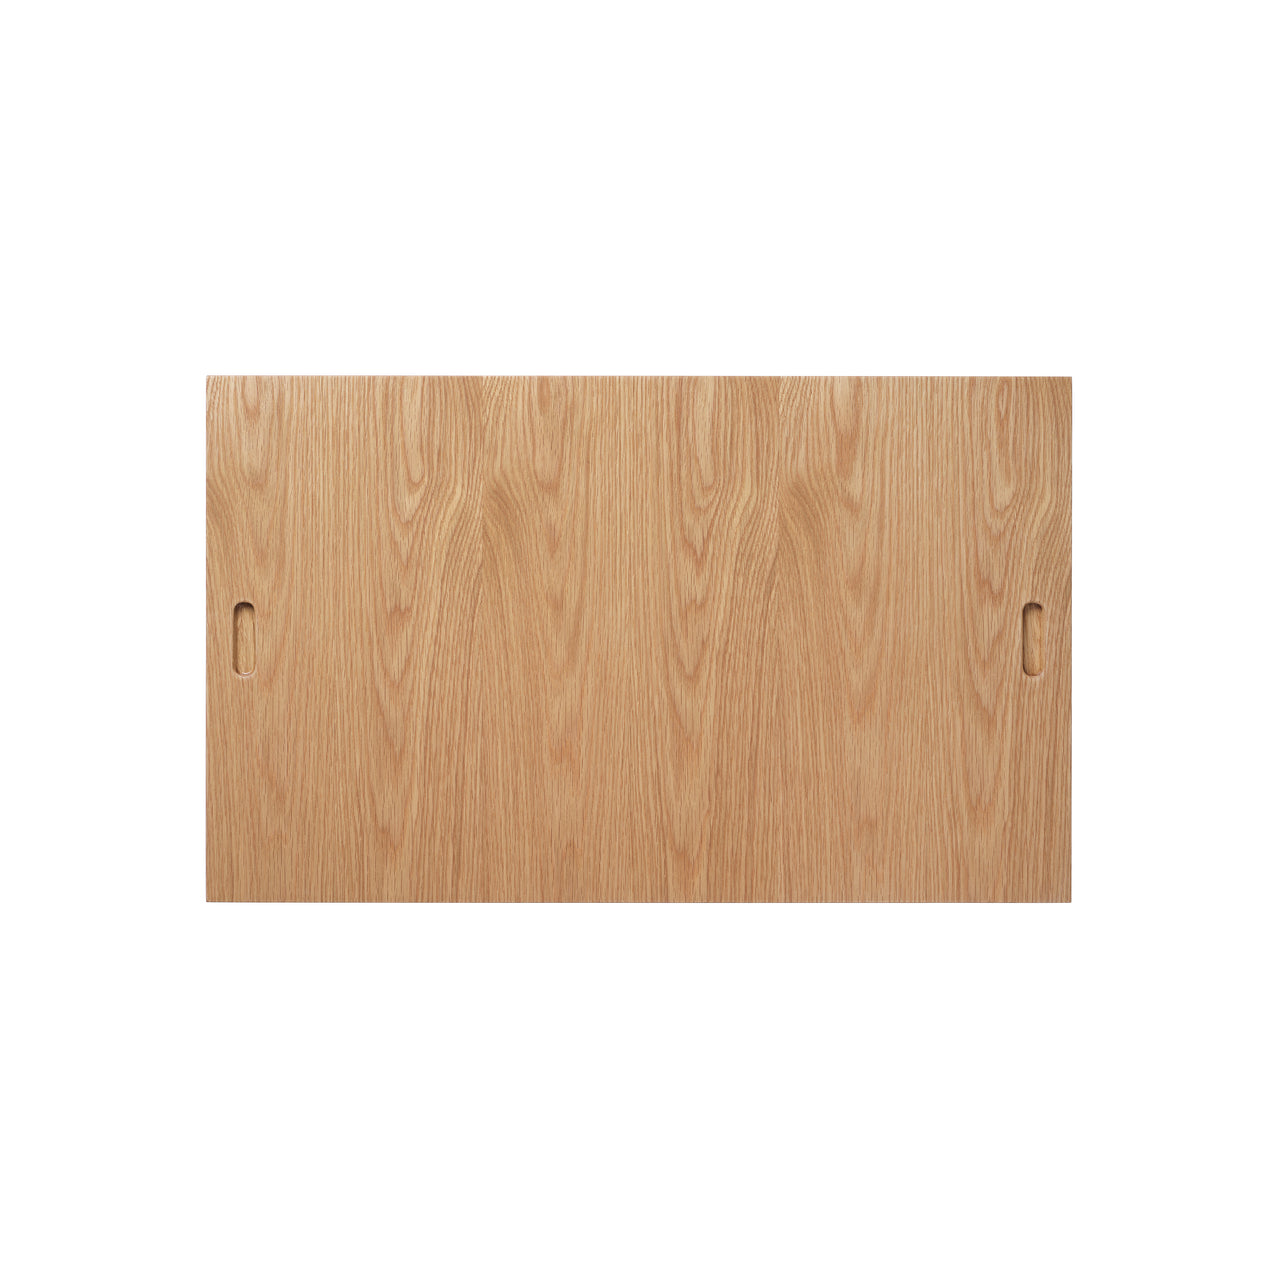 BM0253-1 Shelving System: White Oiled Oak